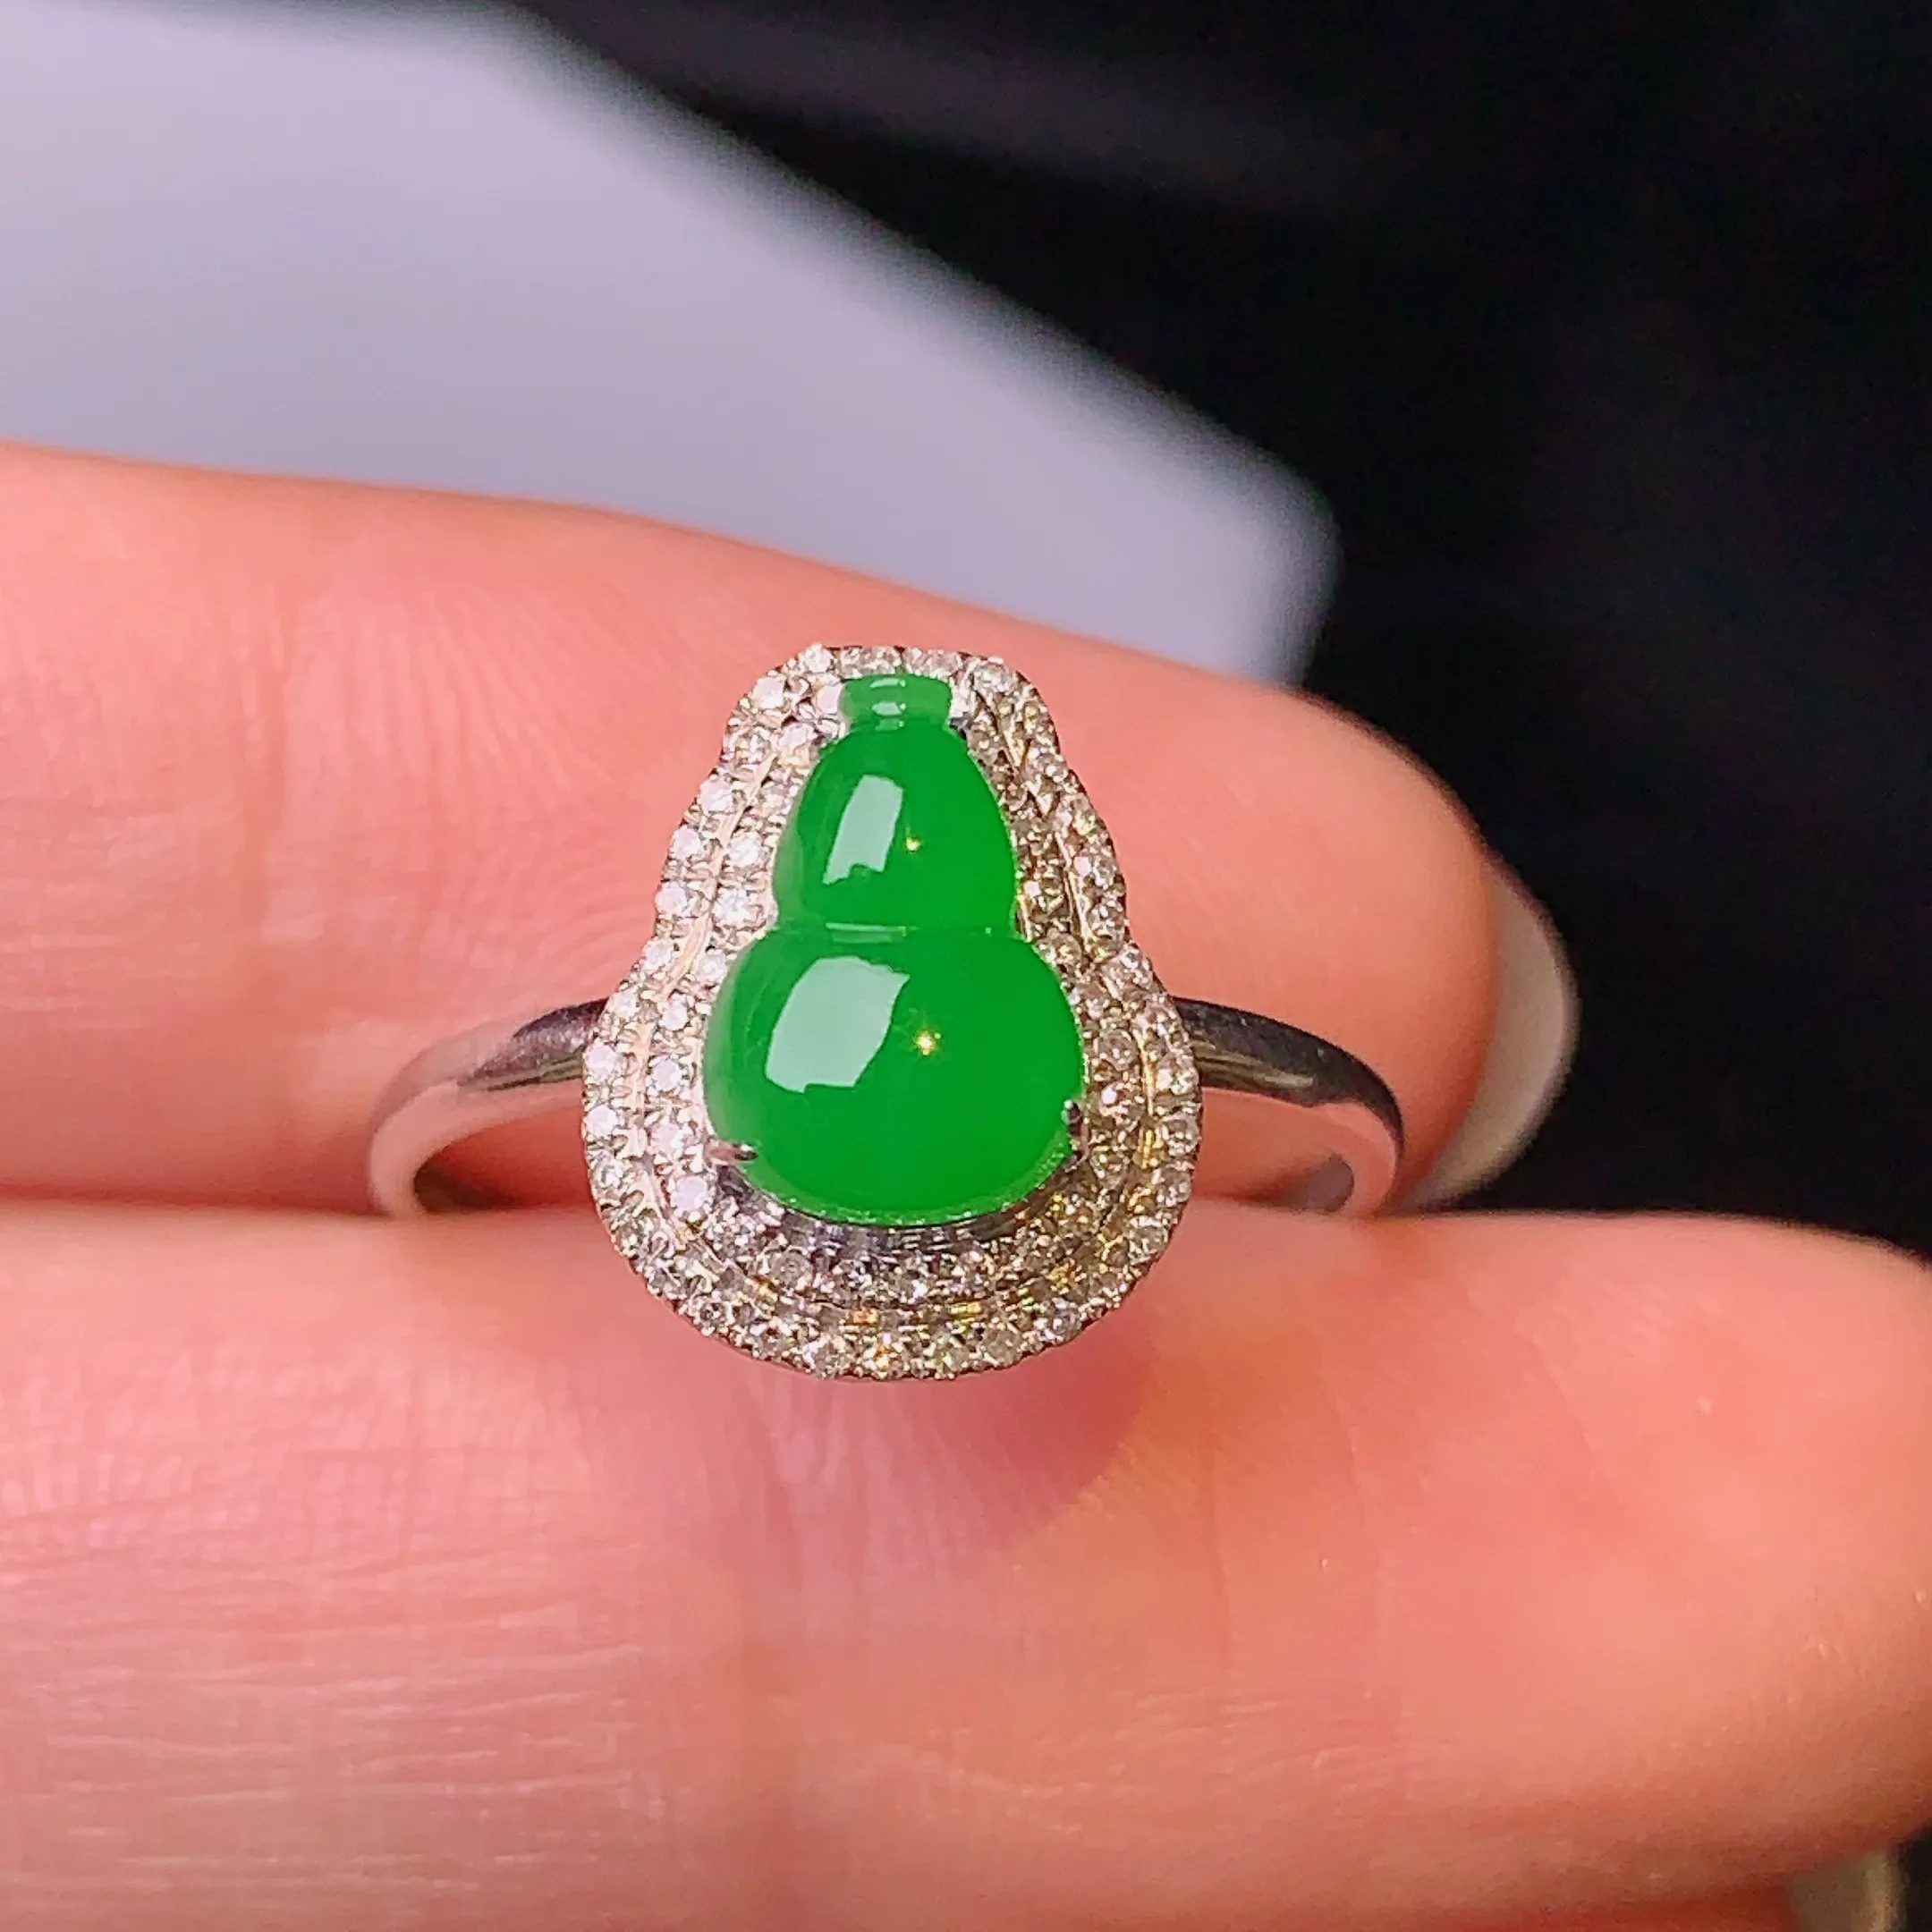 18k金钻镶嵌满绿葫芦戒指 玉质细腻 色泽艳丽 圈口14 整体尺寸12.5*10.1*7.2